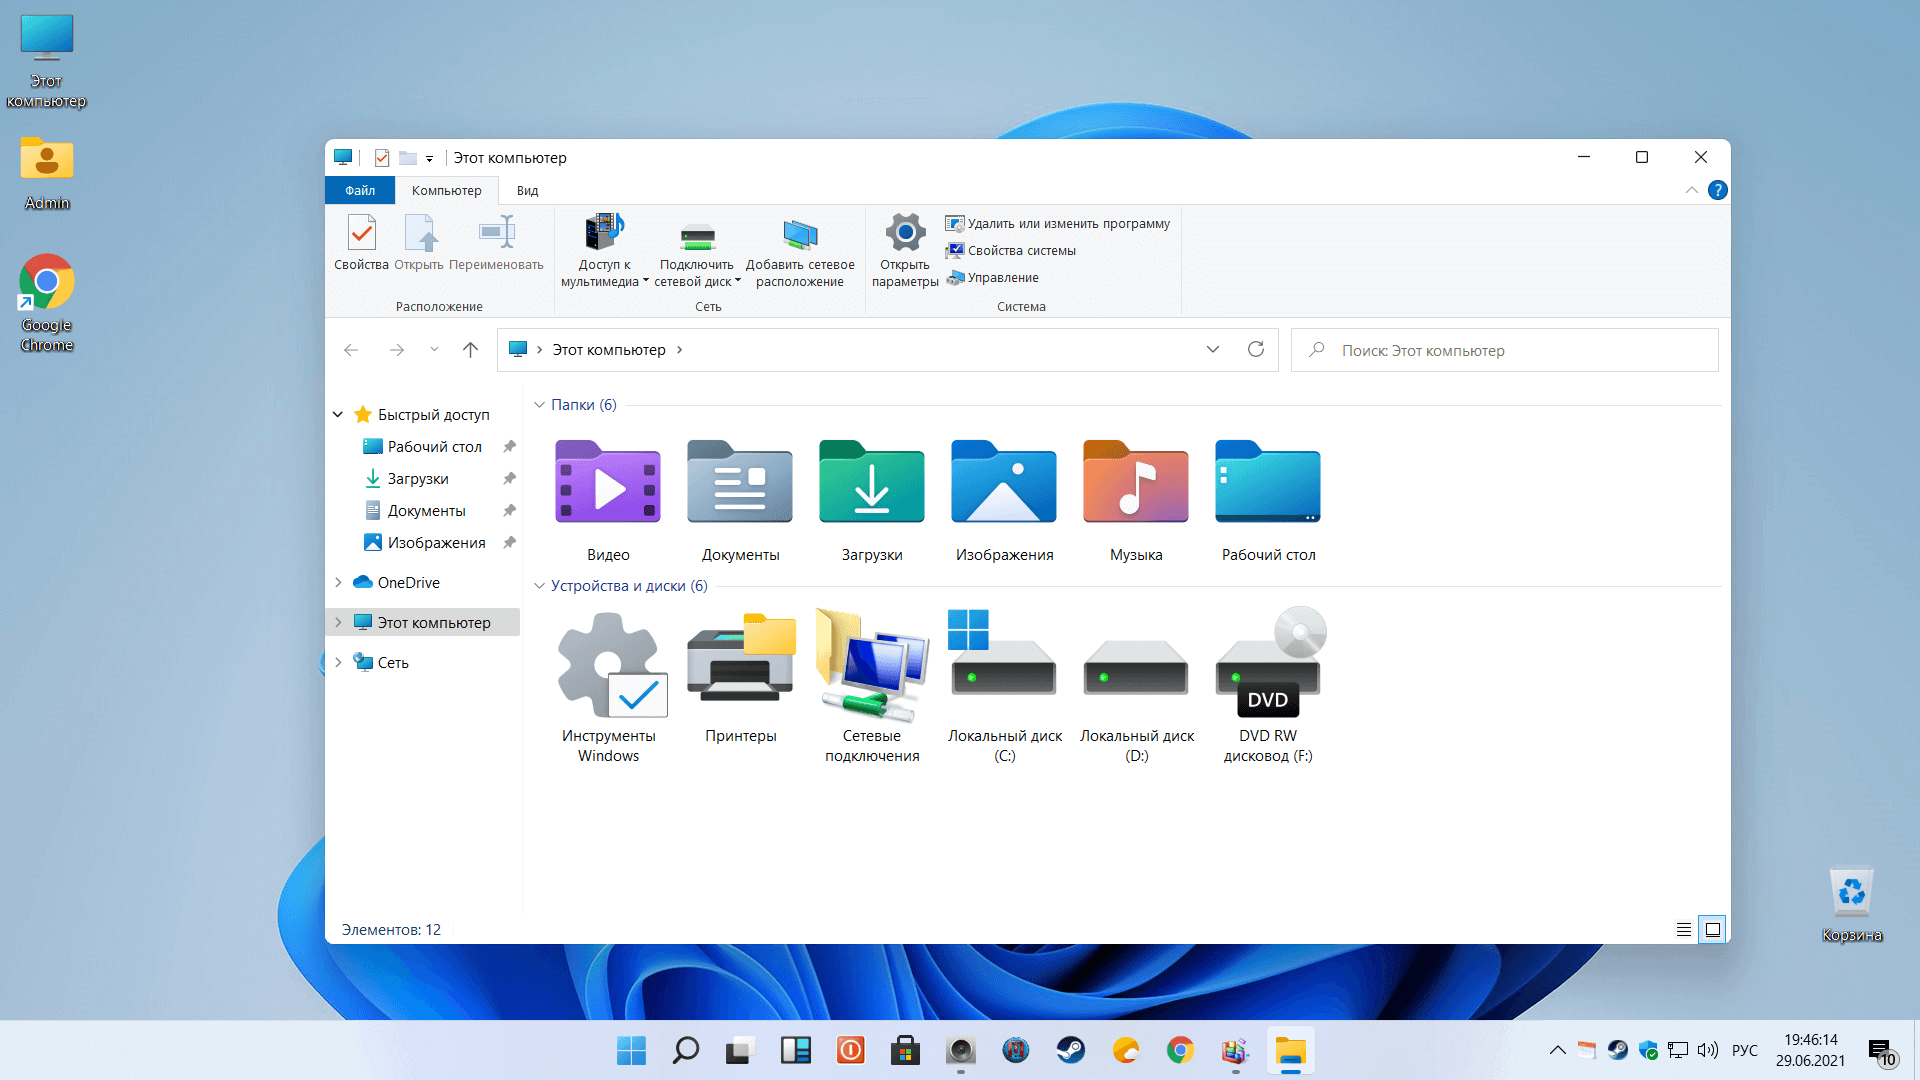 Microsoft windows 8 - полный обзор